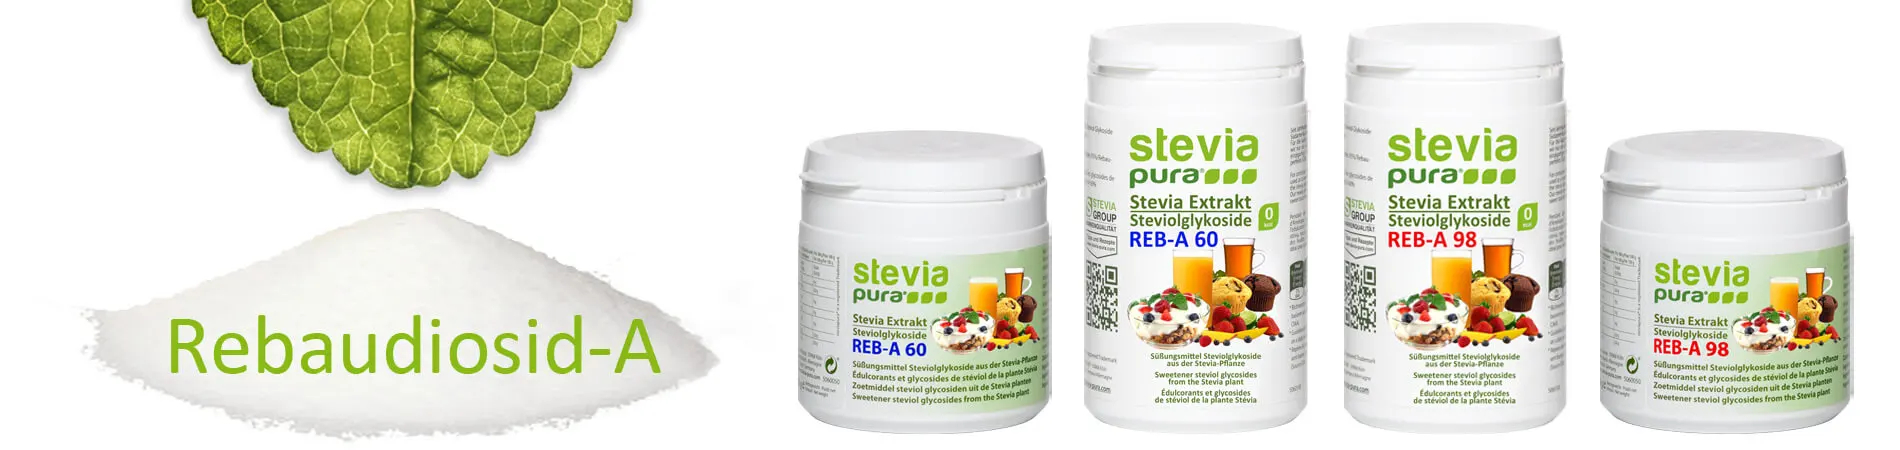 Rebaudioside-A: Pure Stevia poeder Steviolglycosiden